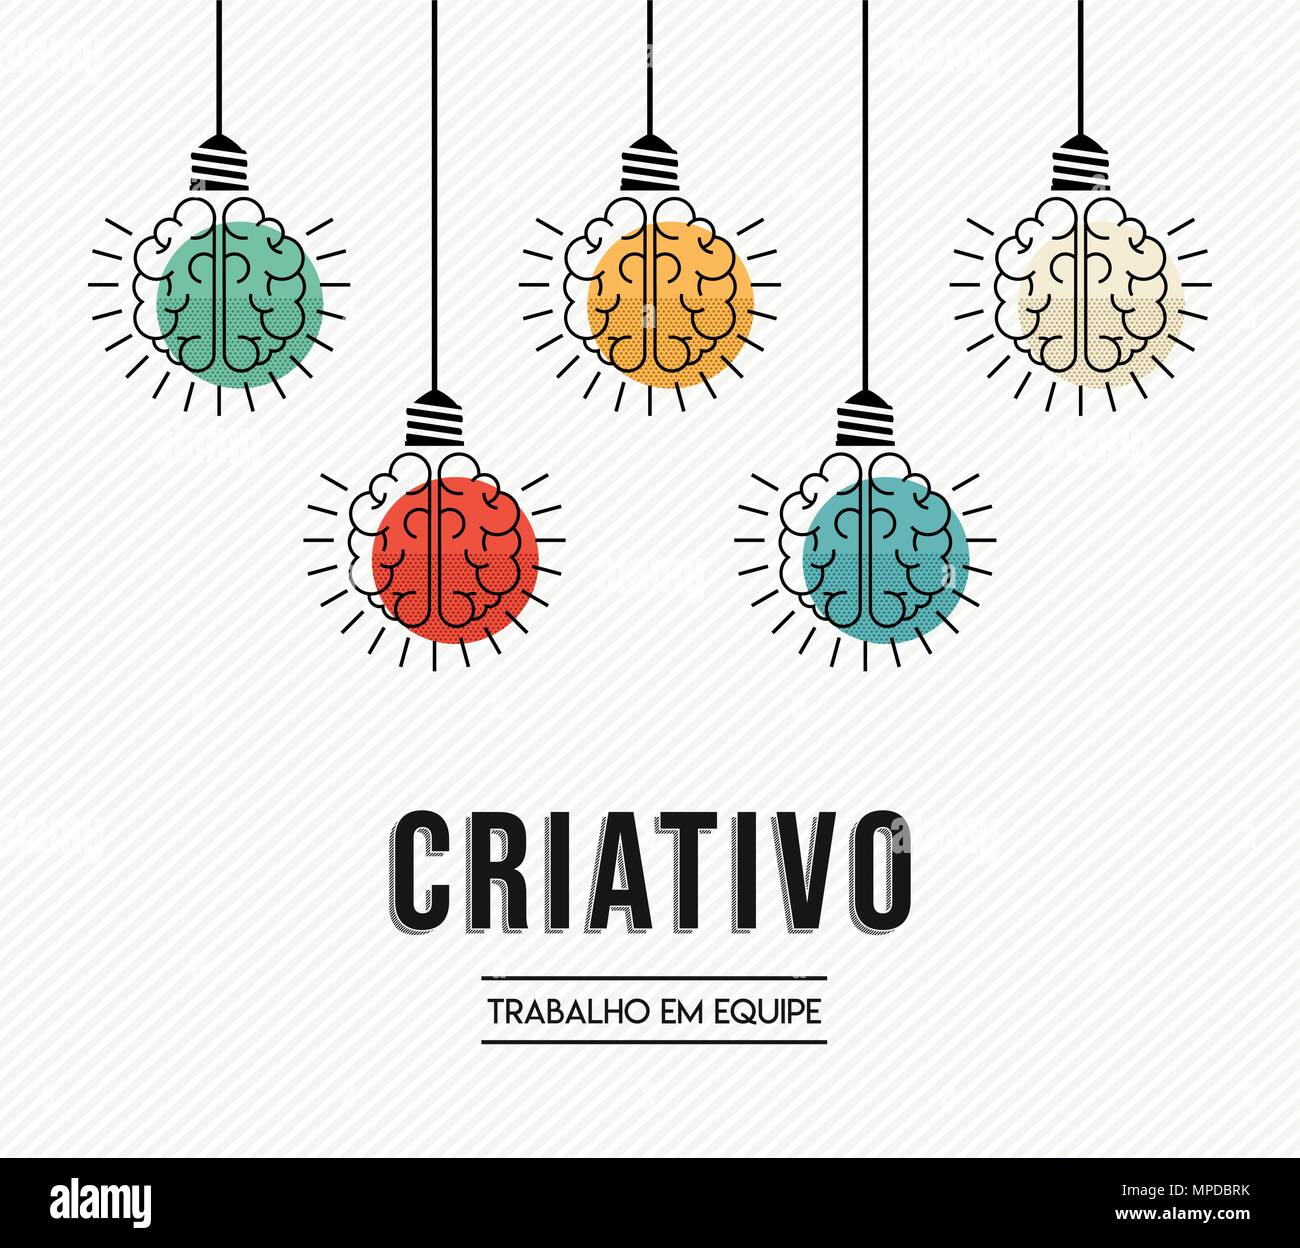 Kreative Teamarbeit modernes Design in portugiesischer Sprache mit menschlichen Gehirnen als bunte Lampe Licht, business Kreativität Konzept. EPS 10 Vektor. Stock Vektor